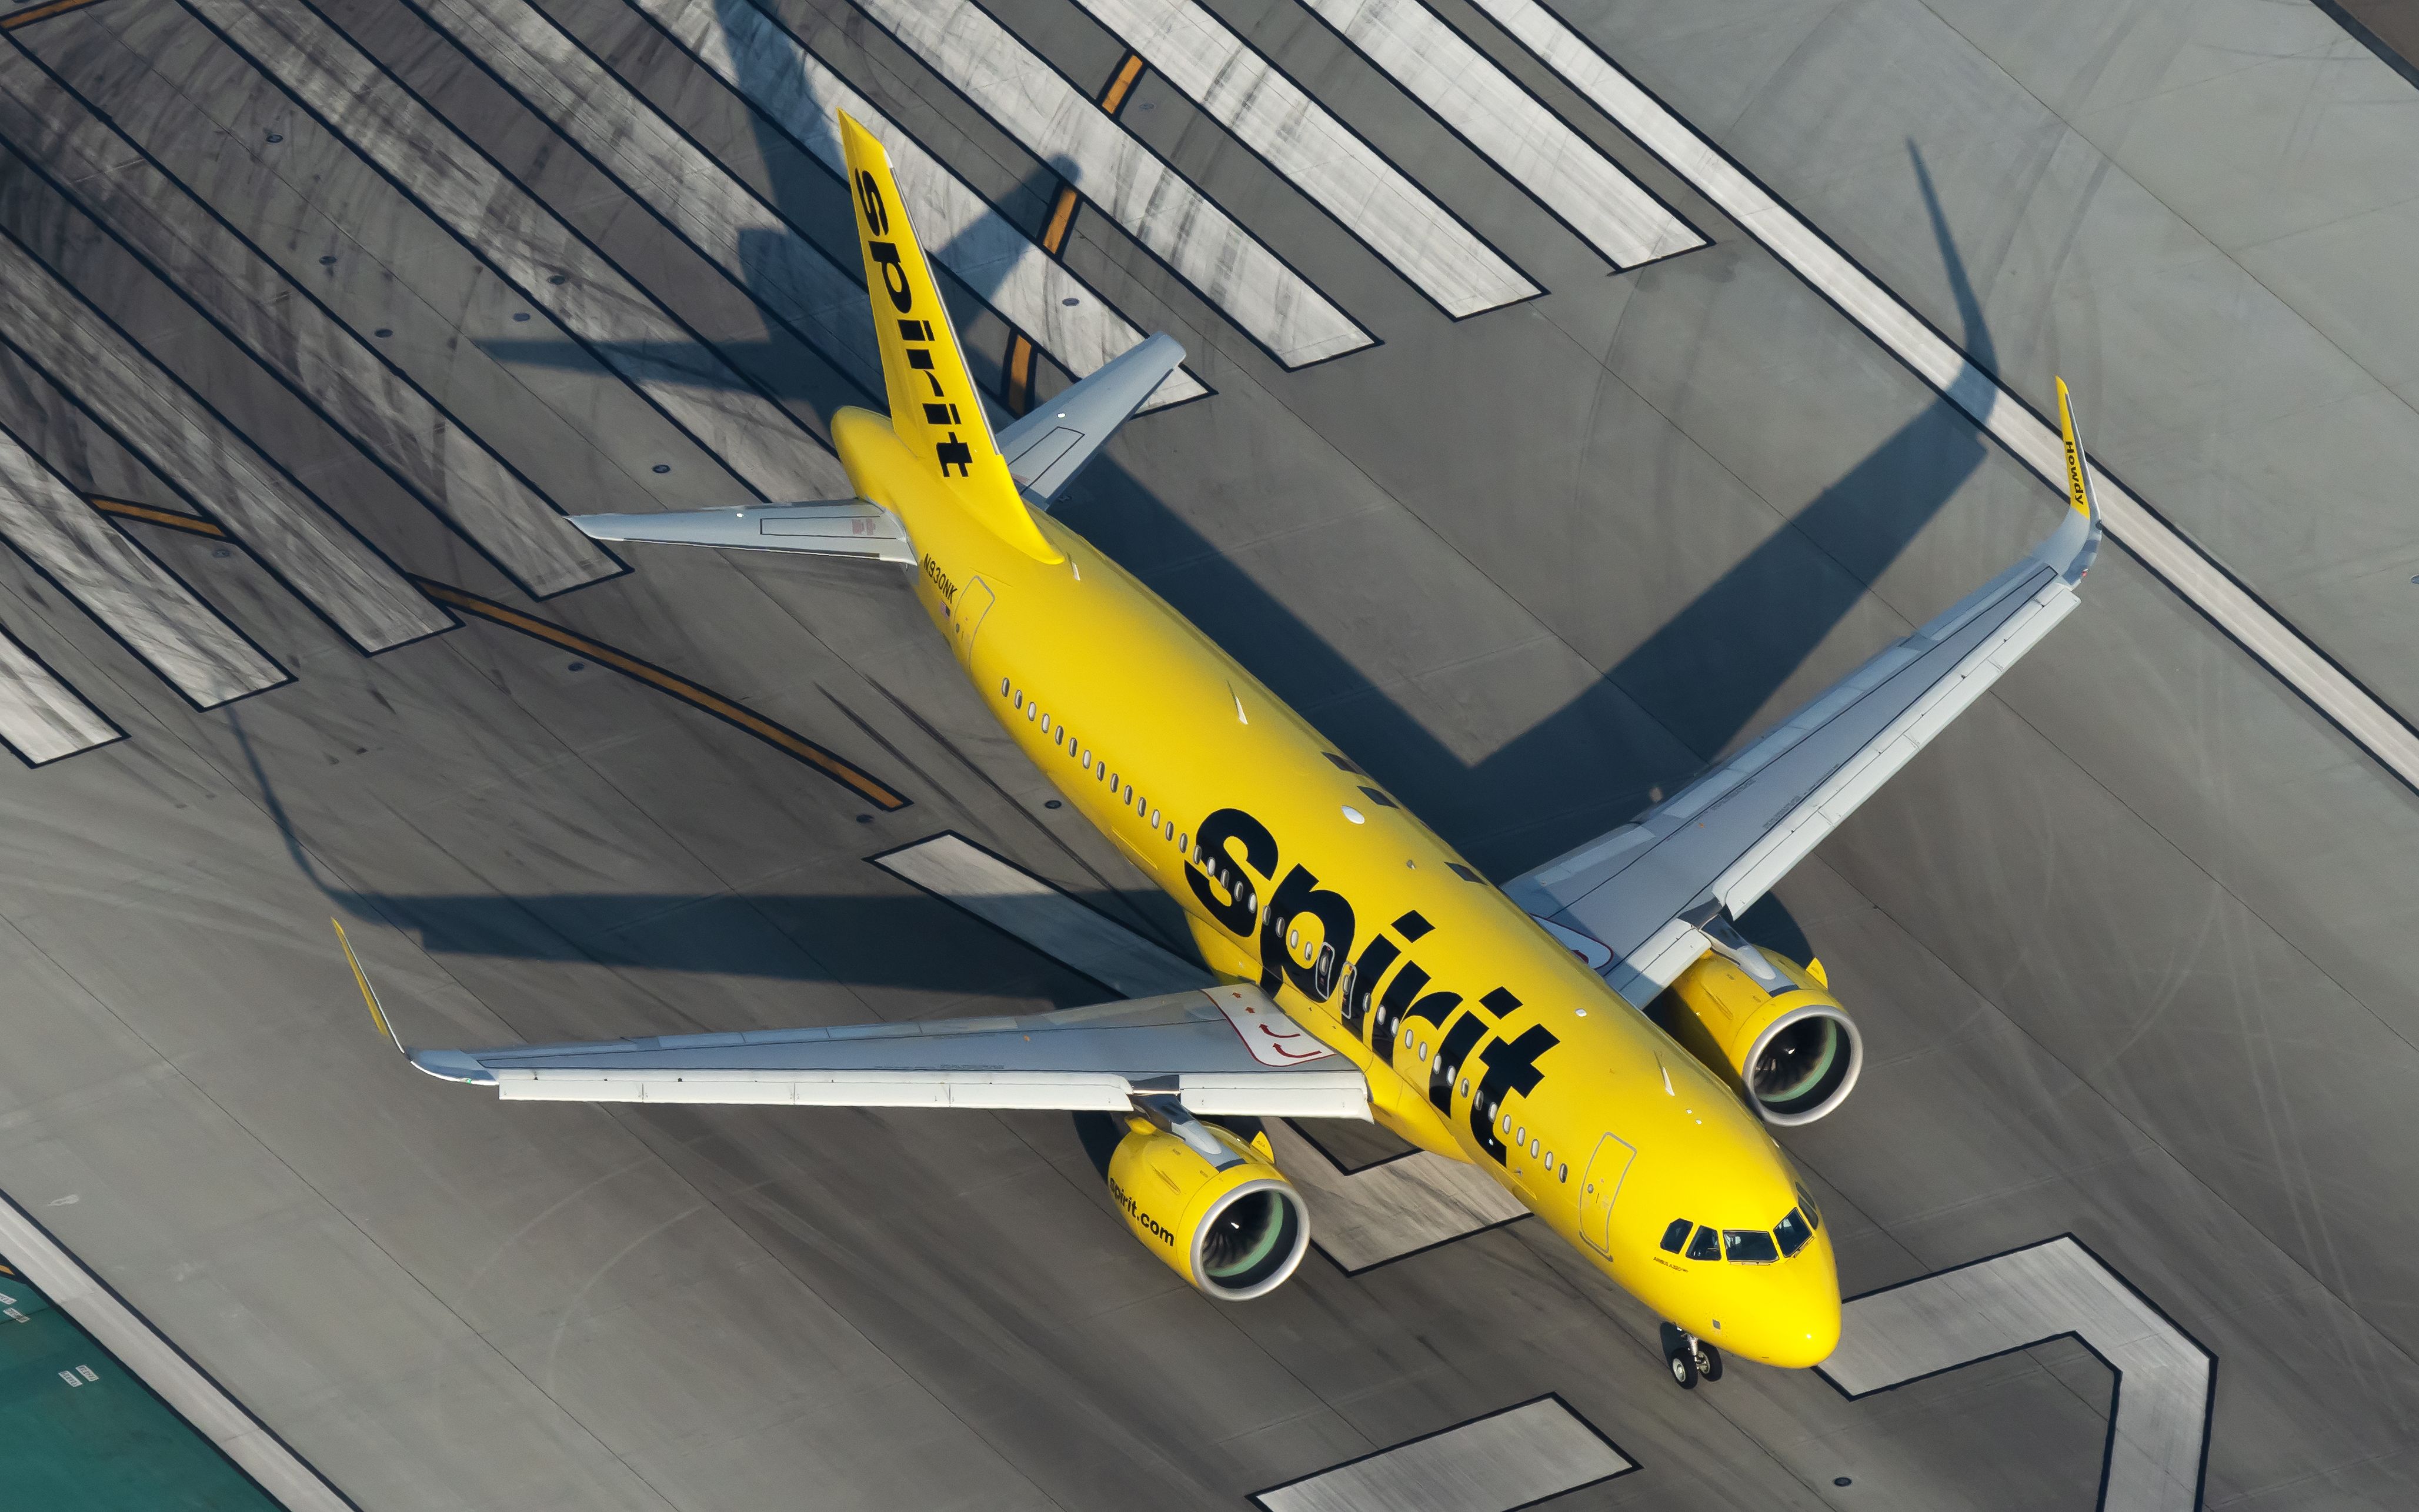 N930nk Spirit Airlines Airbus A320 271n 1 